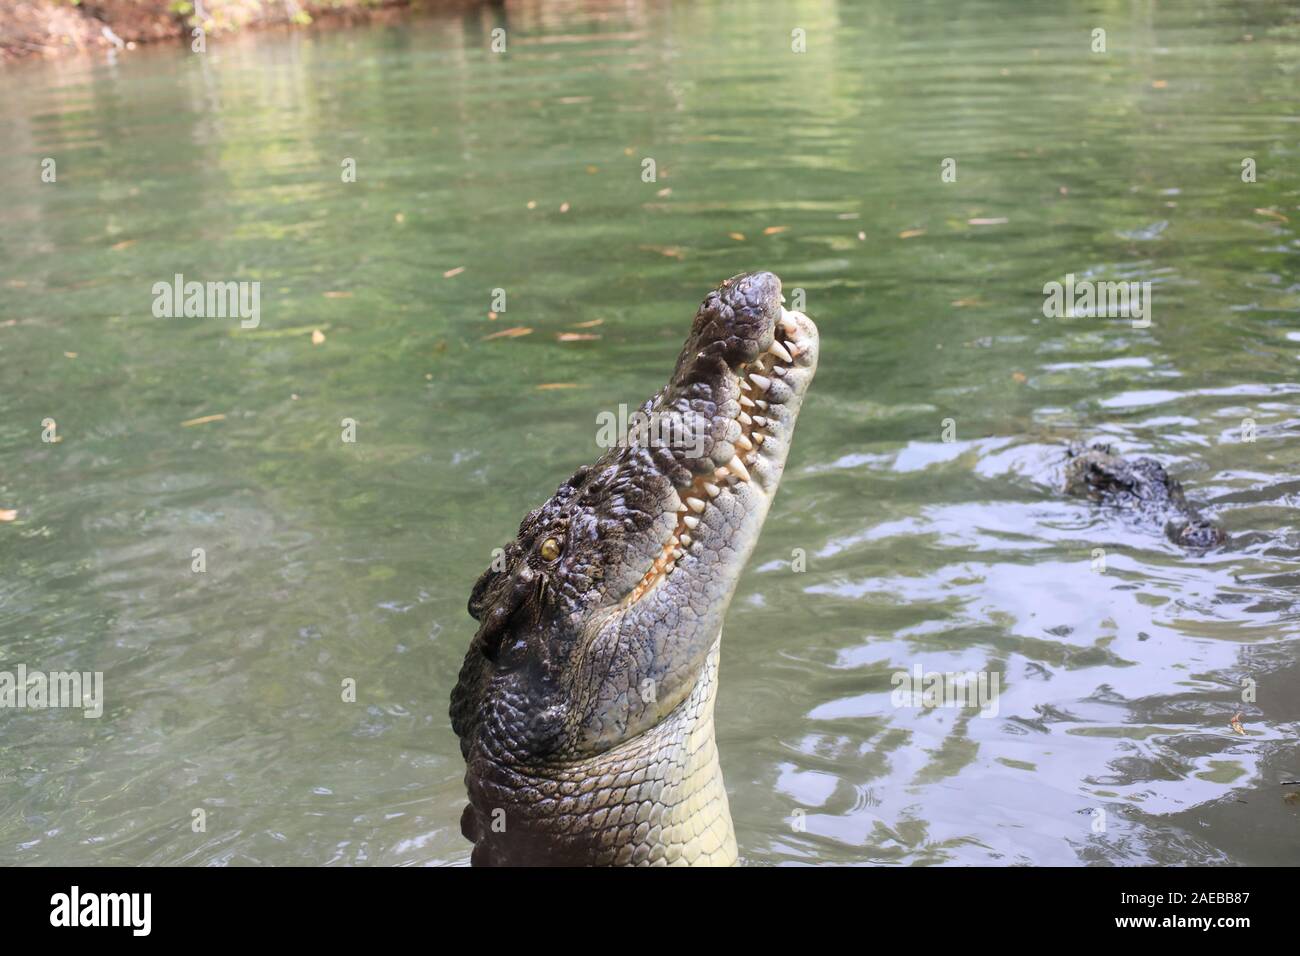 Los cocodrilos de agua salada (Crocodylus porosus) en busca de alimentos Foto de stock